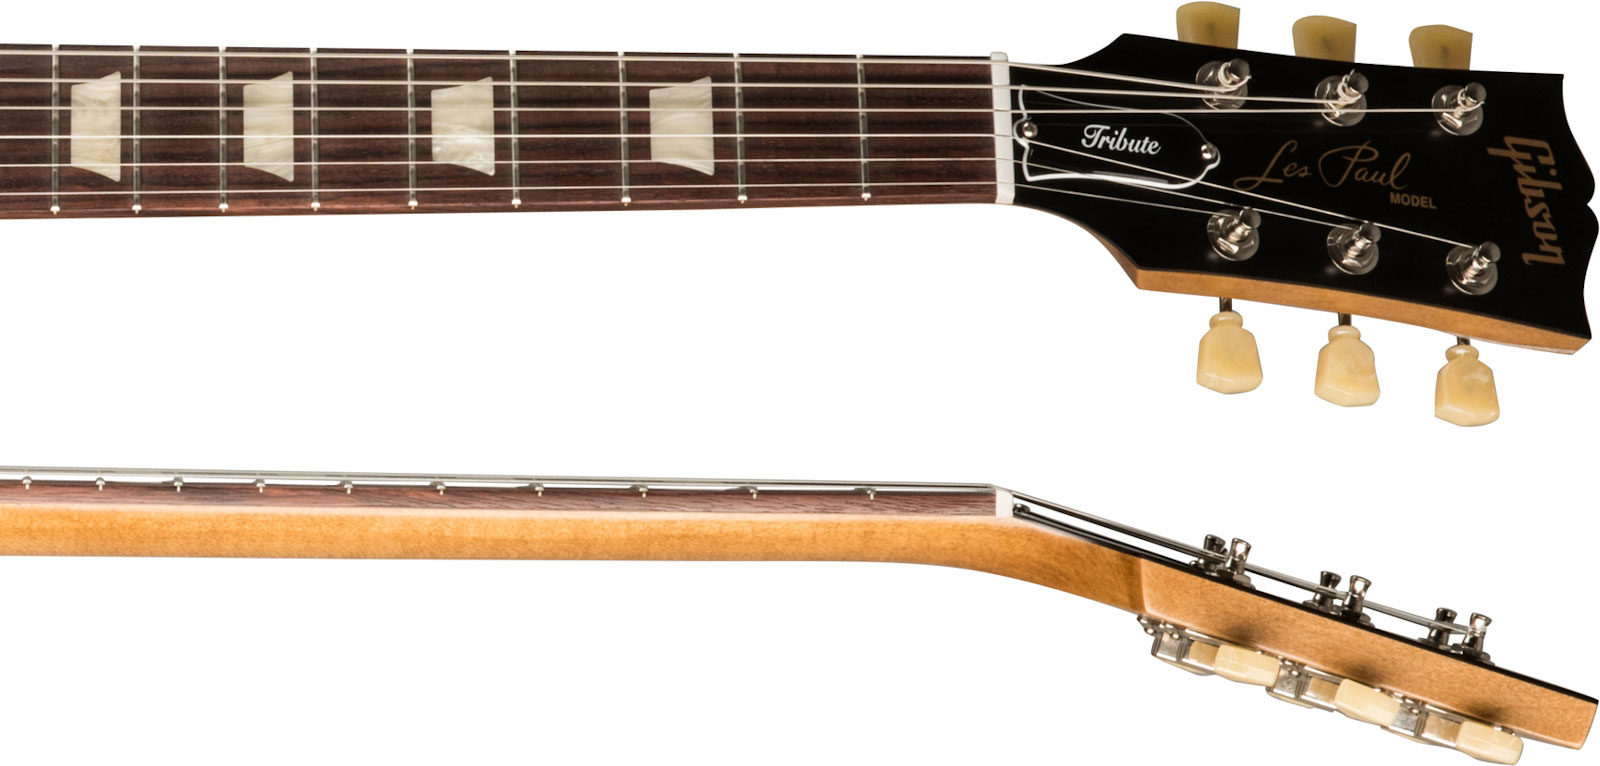 Gibson Les Paul Tribute Modern 2h Ht Rw - Satin Honey Burst - Enkel gesneden elektrische gitaar - Variation 3